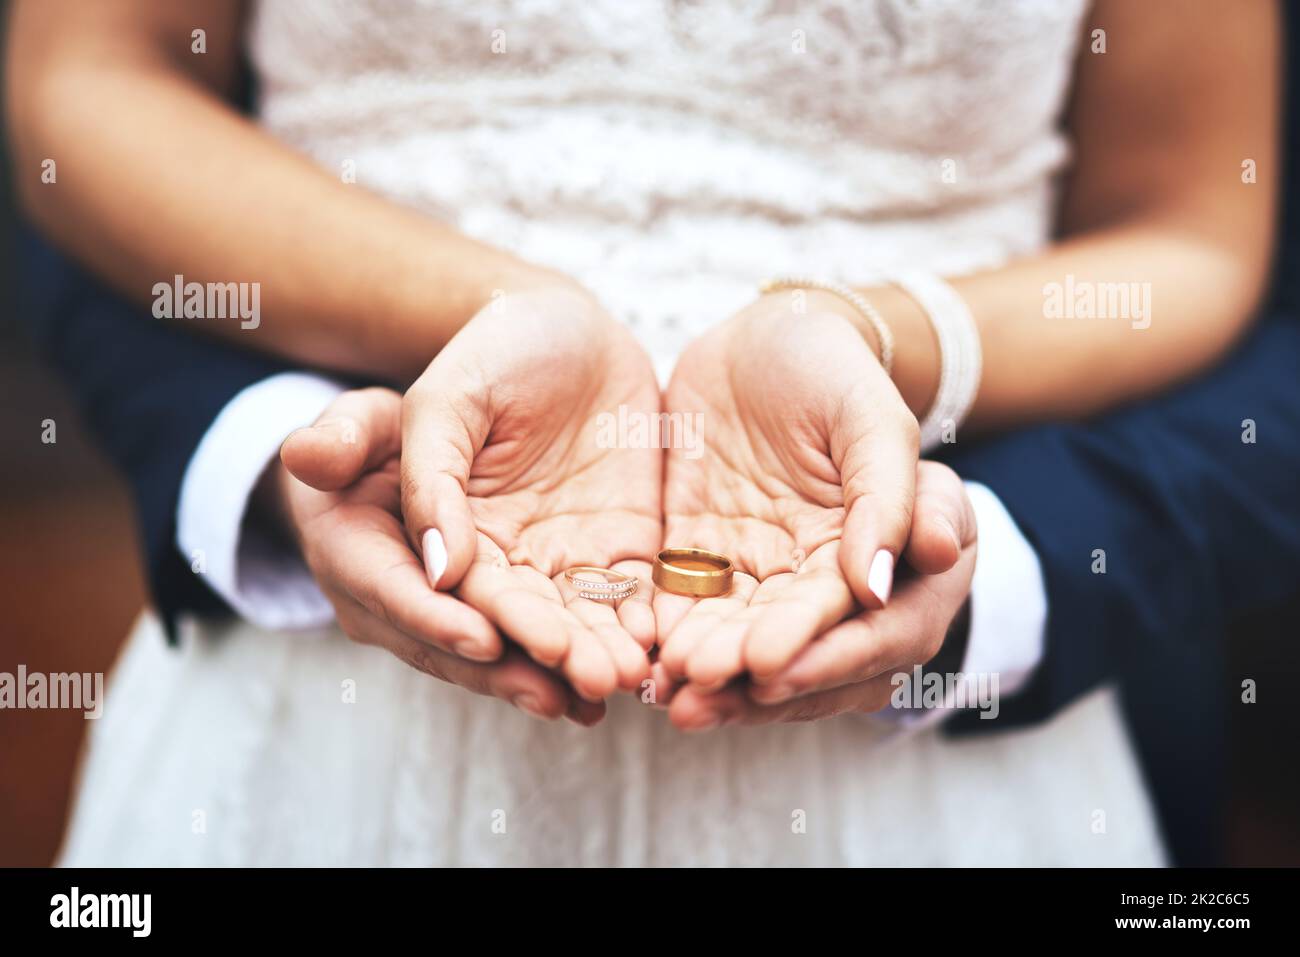 Das sind Symbole unserer Liebe und unseres Engagements. Ausgeschnittene Aufnahme eines unverkennbaren frisch vermählten Paares, das am Hochzeitstag ihre Ringe hält und zeigt. Stockfoto